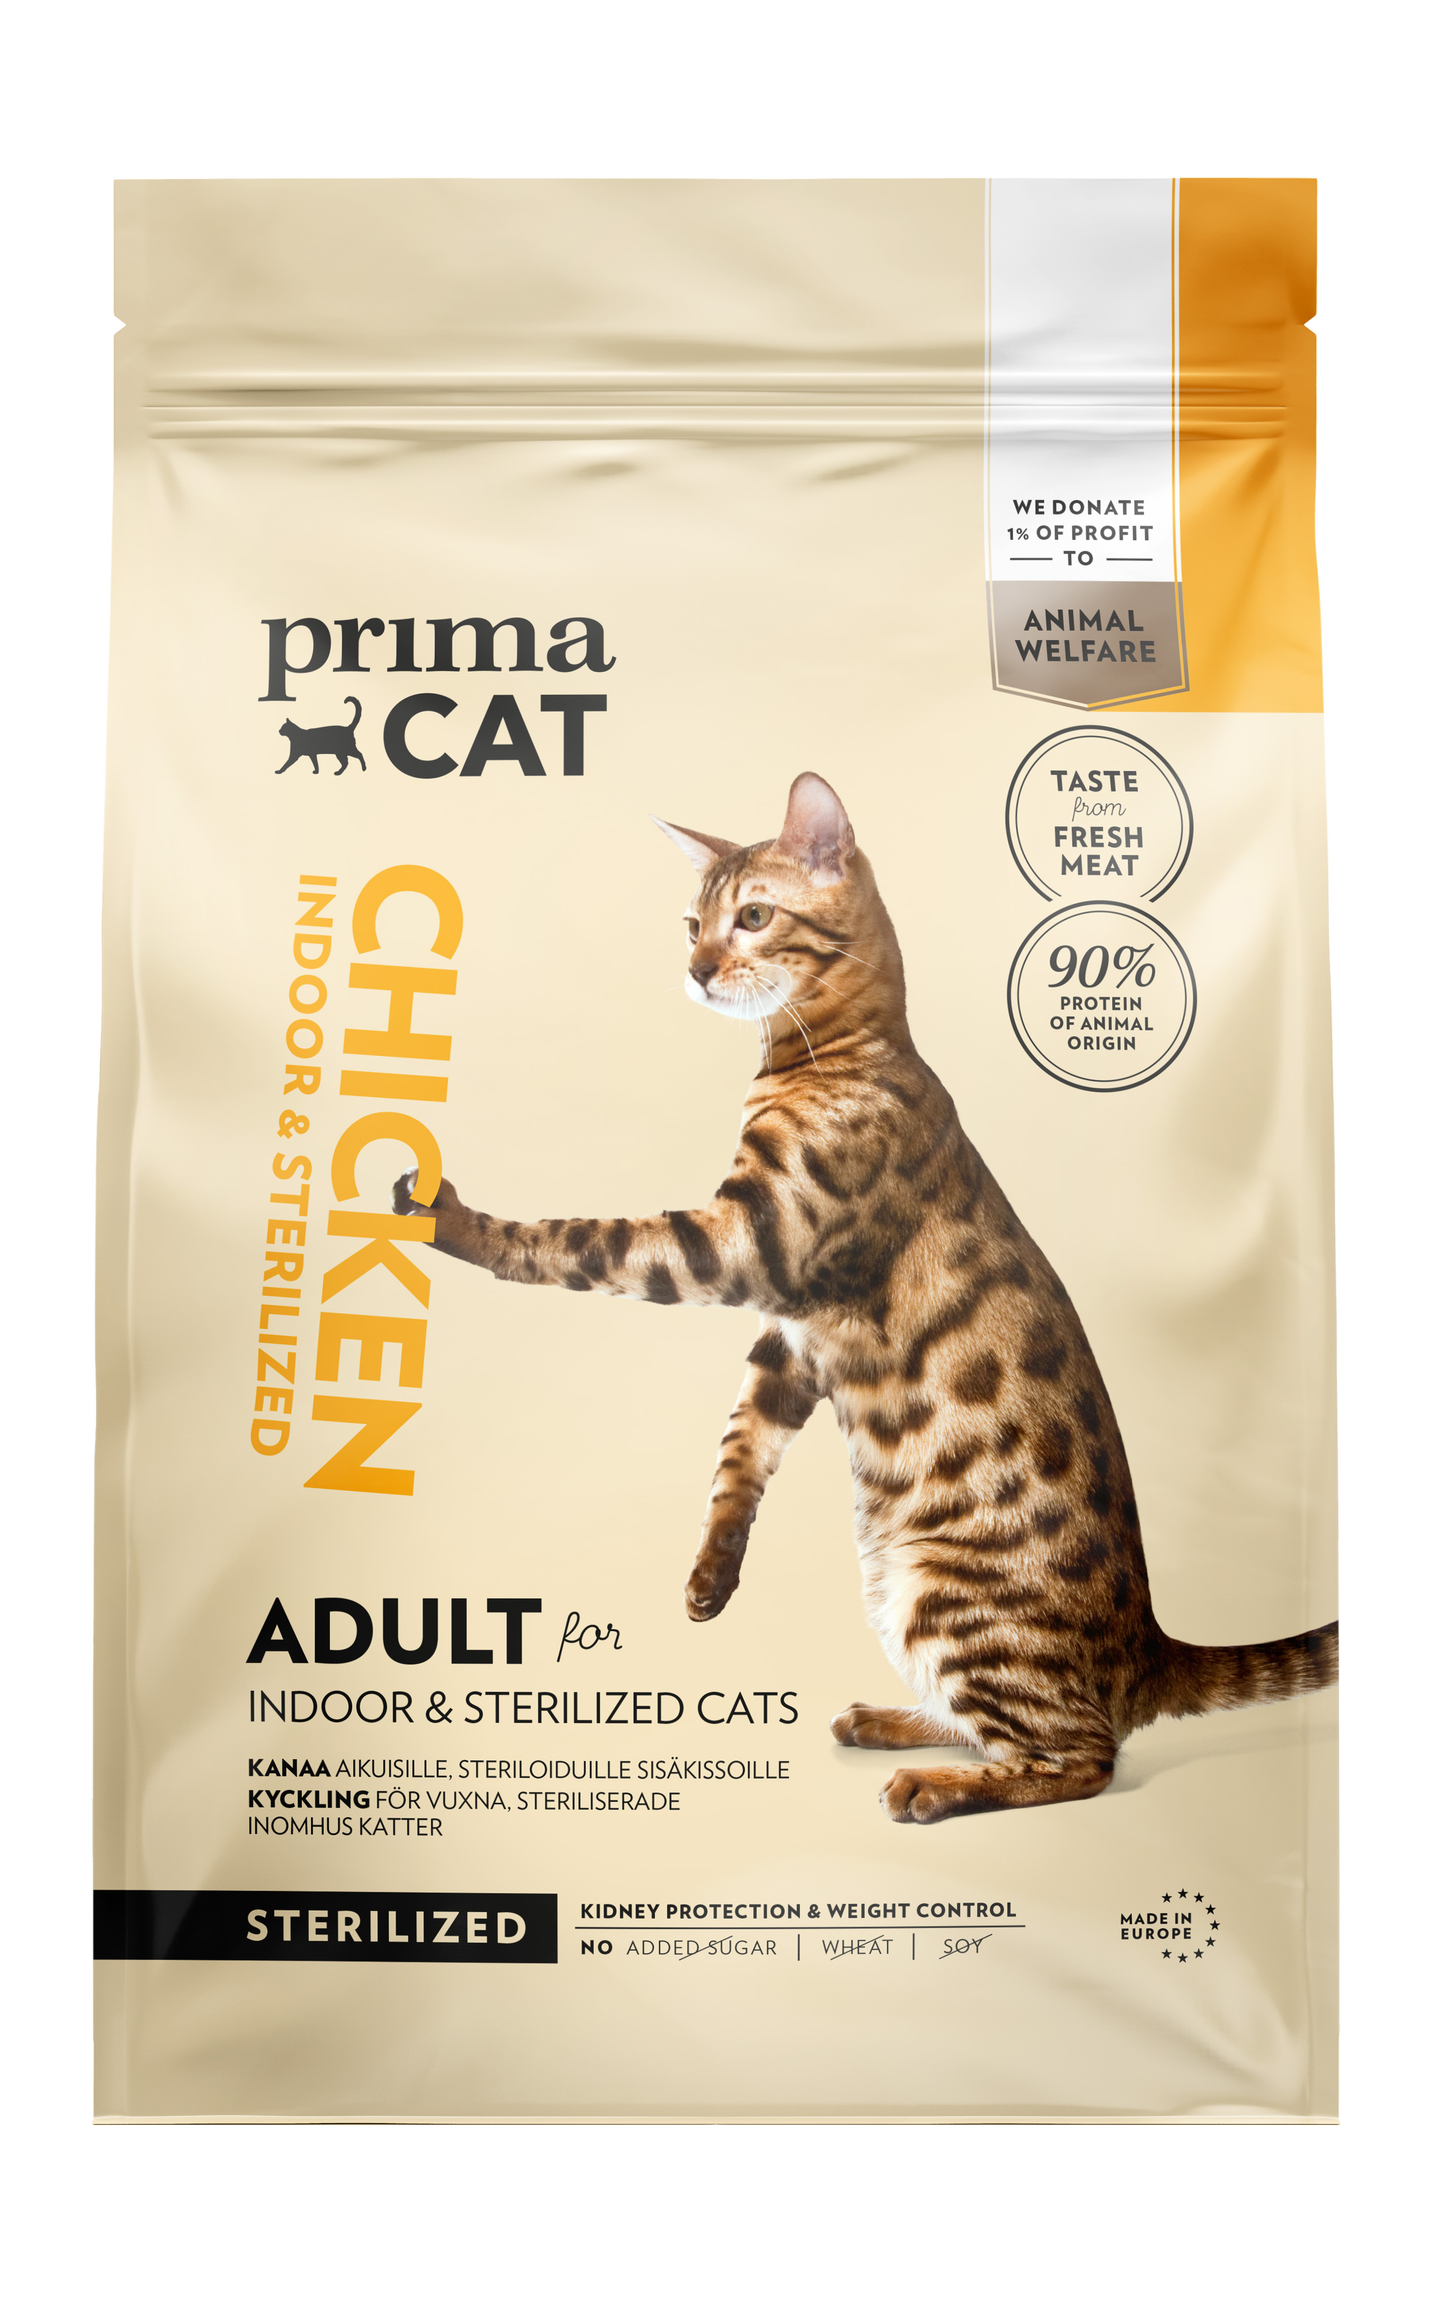 PrimaCat Kana steriloiduille aikuisille kissoille 4kg